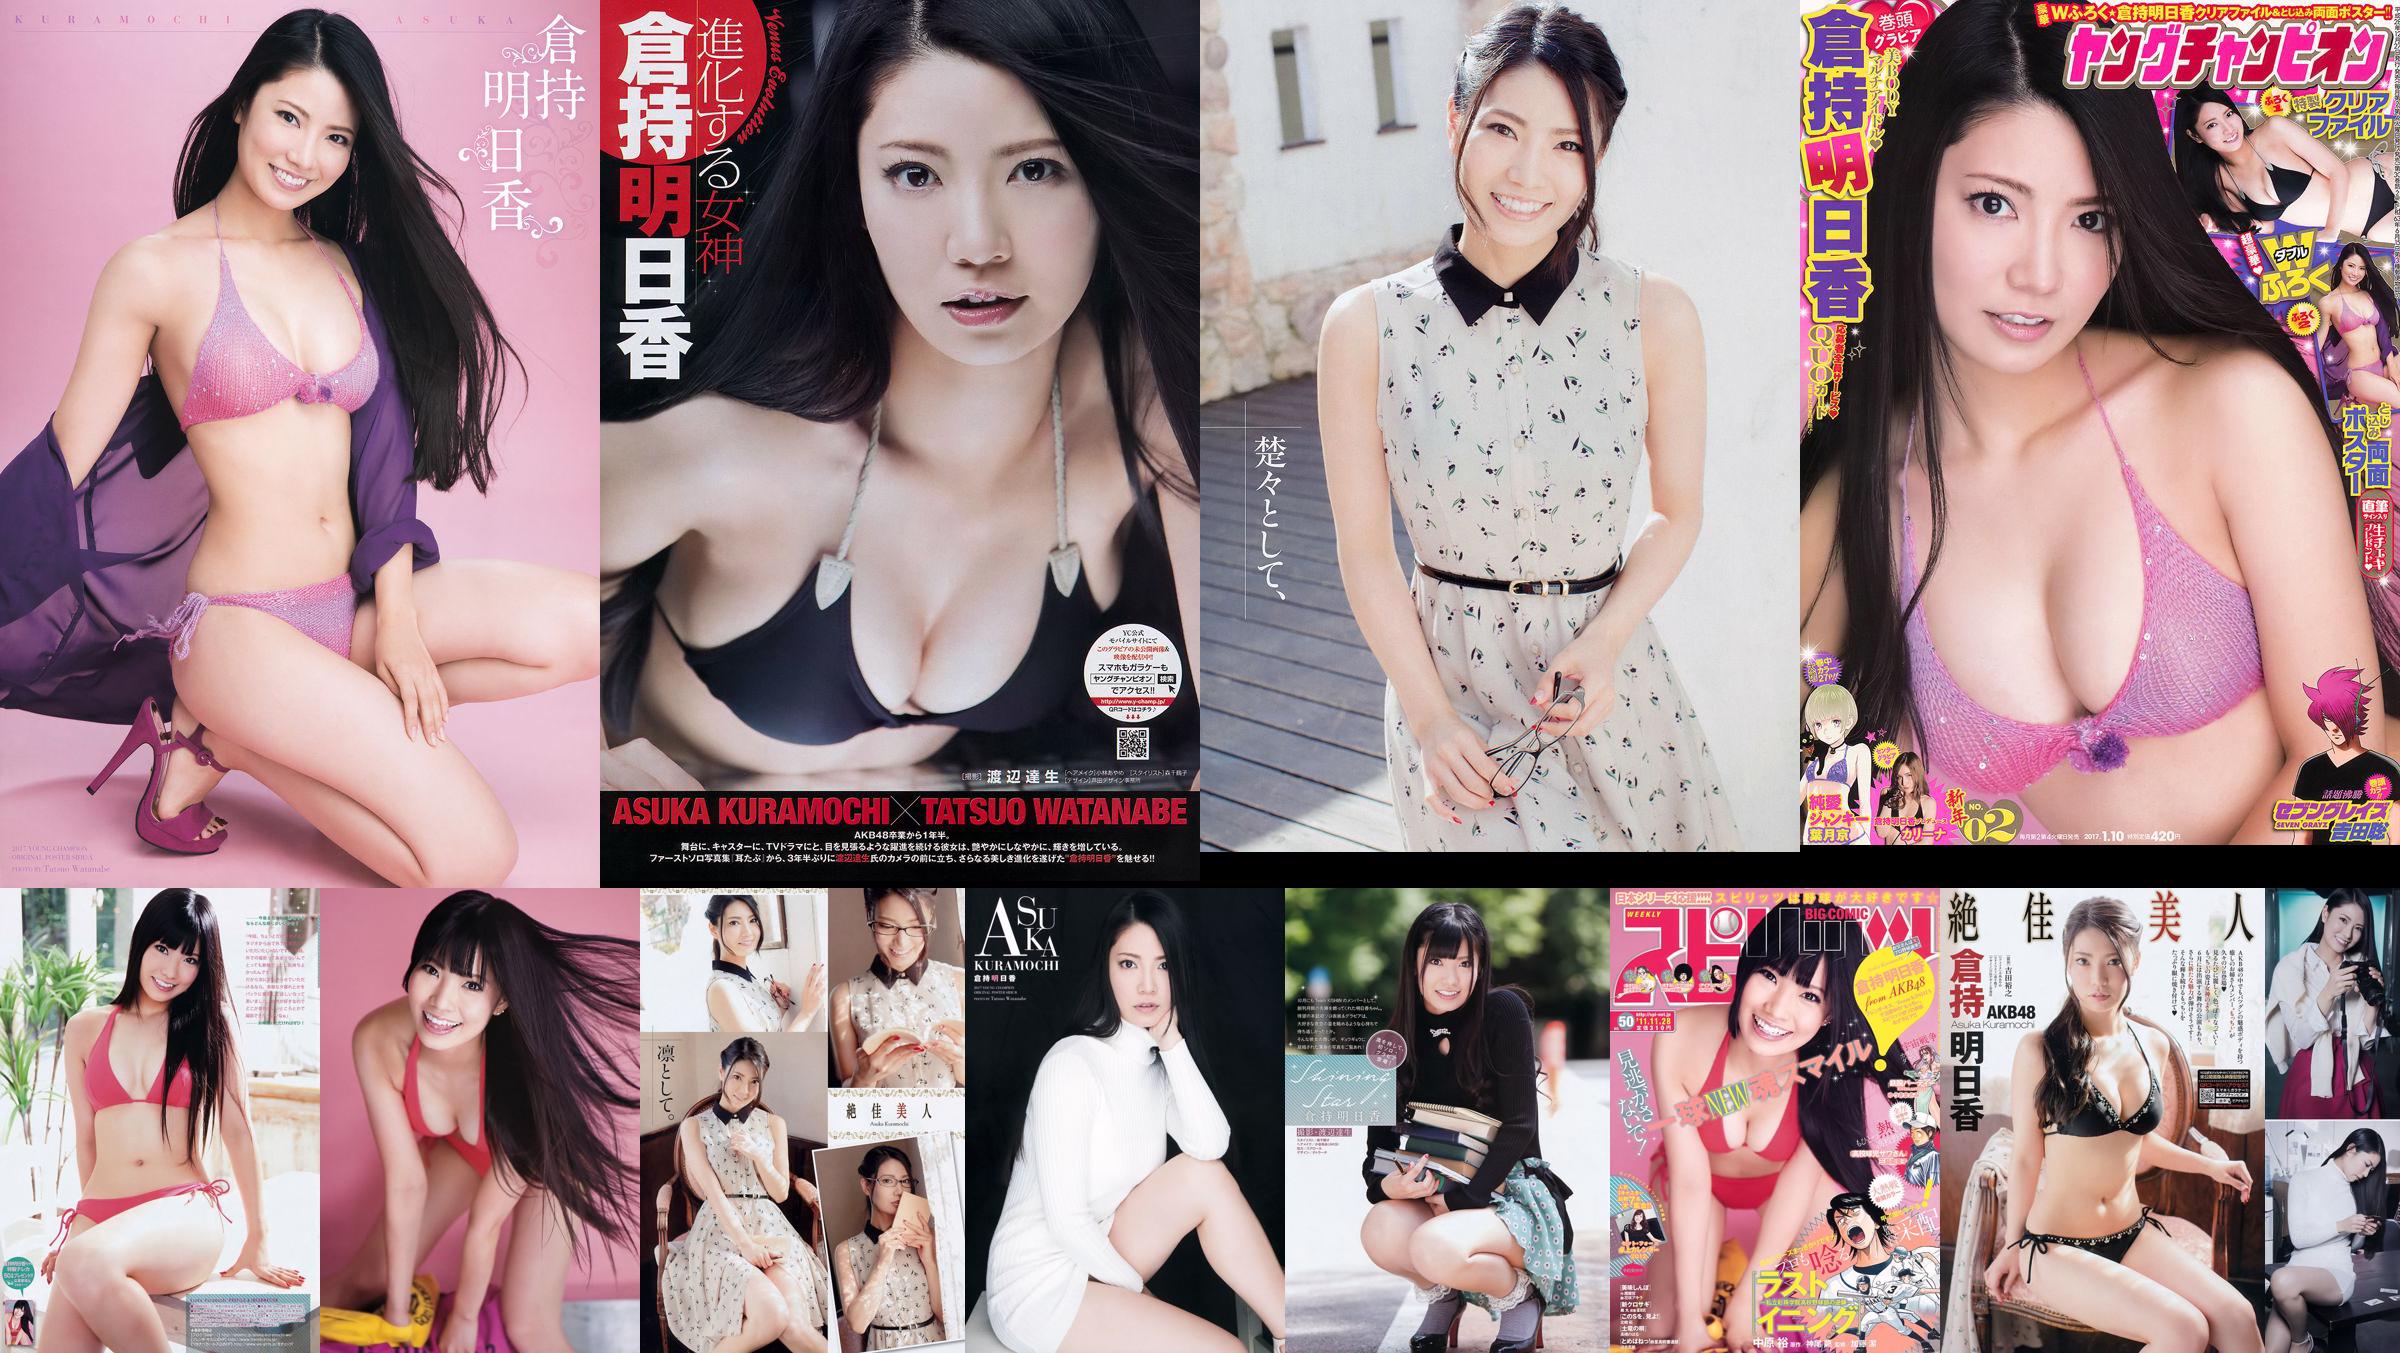 [Jovem campeão] Asuka Kuramochi 2015 No.09 Photo Magazine No.c52870 Página 1